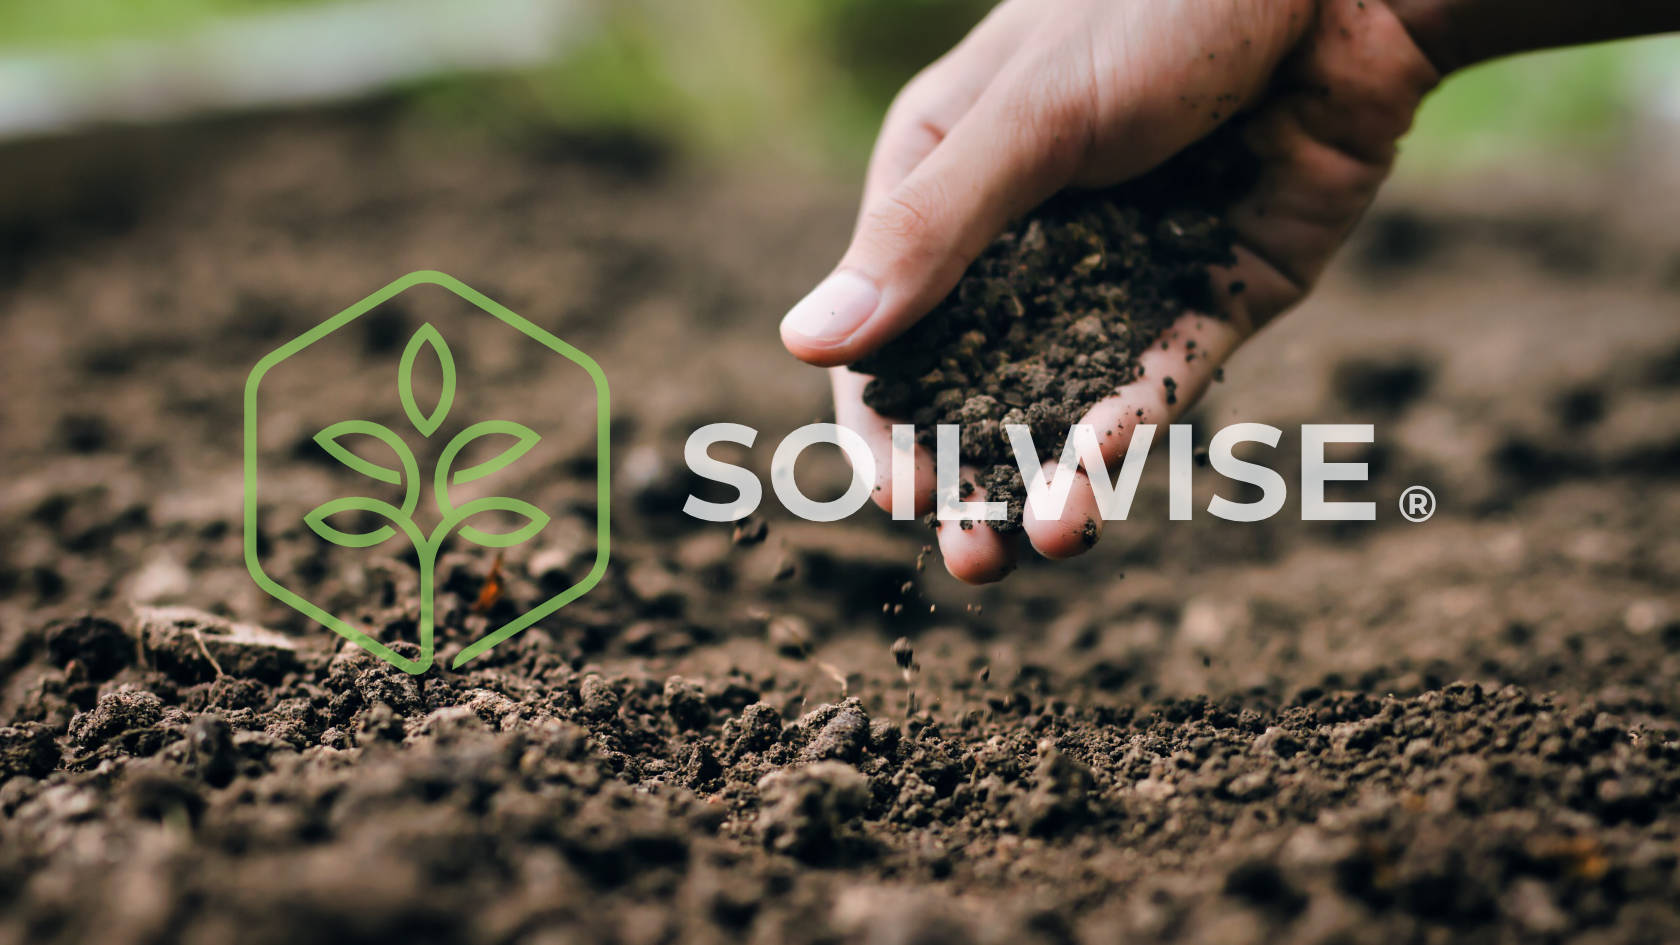 Soilwise - unser neuer Markenname und unsere neue Identität